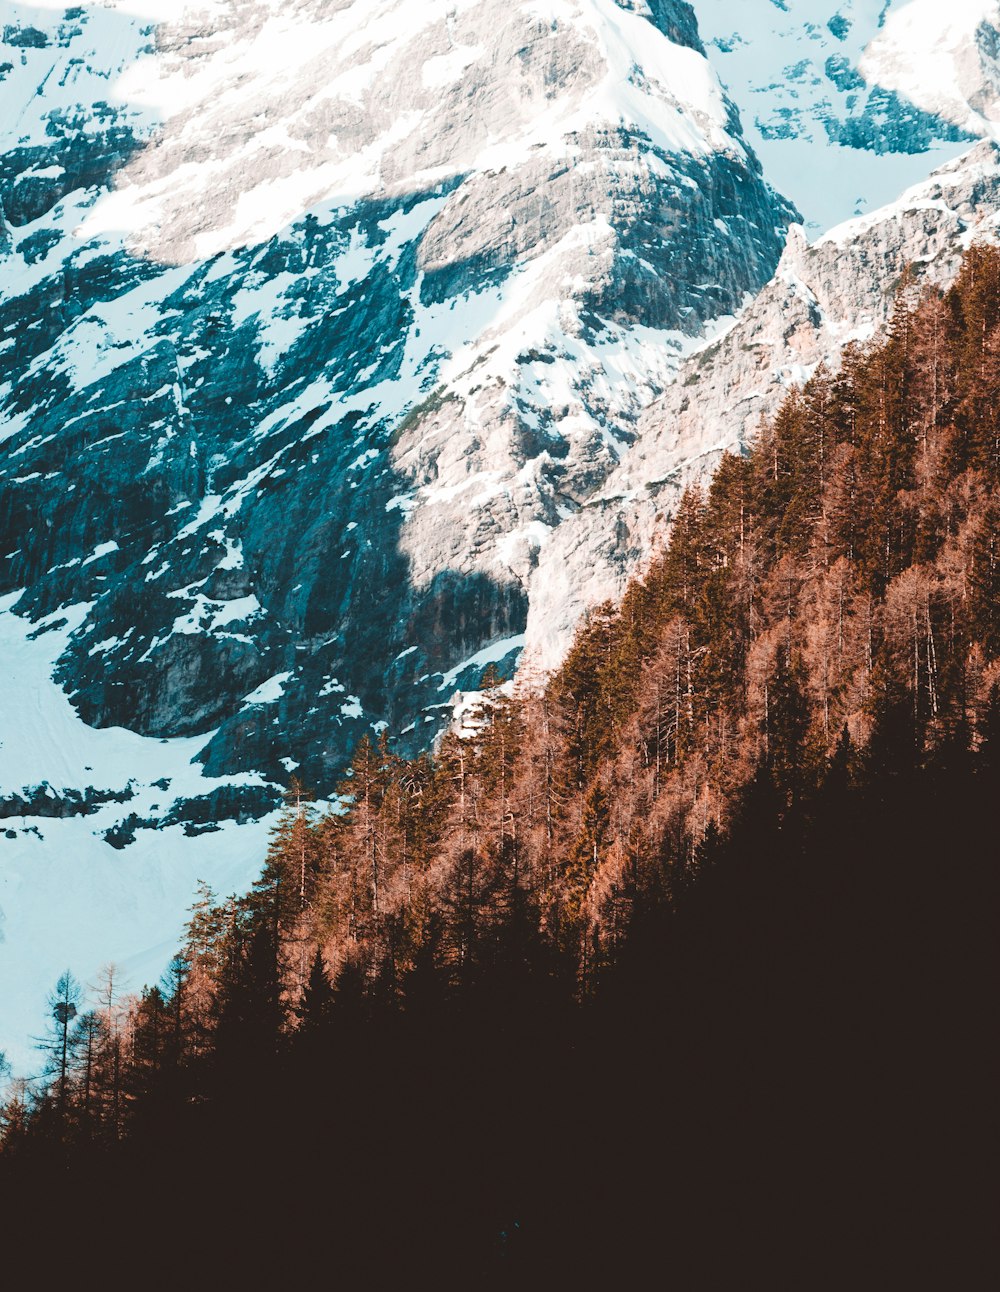 árboles en la ladera nevada de la montaña